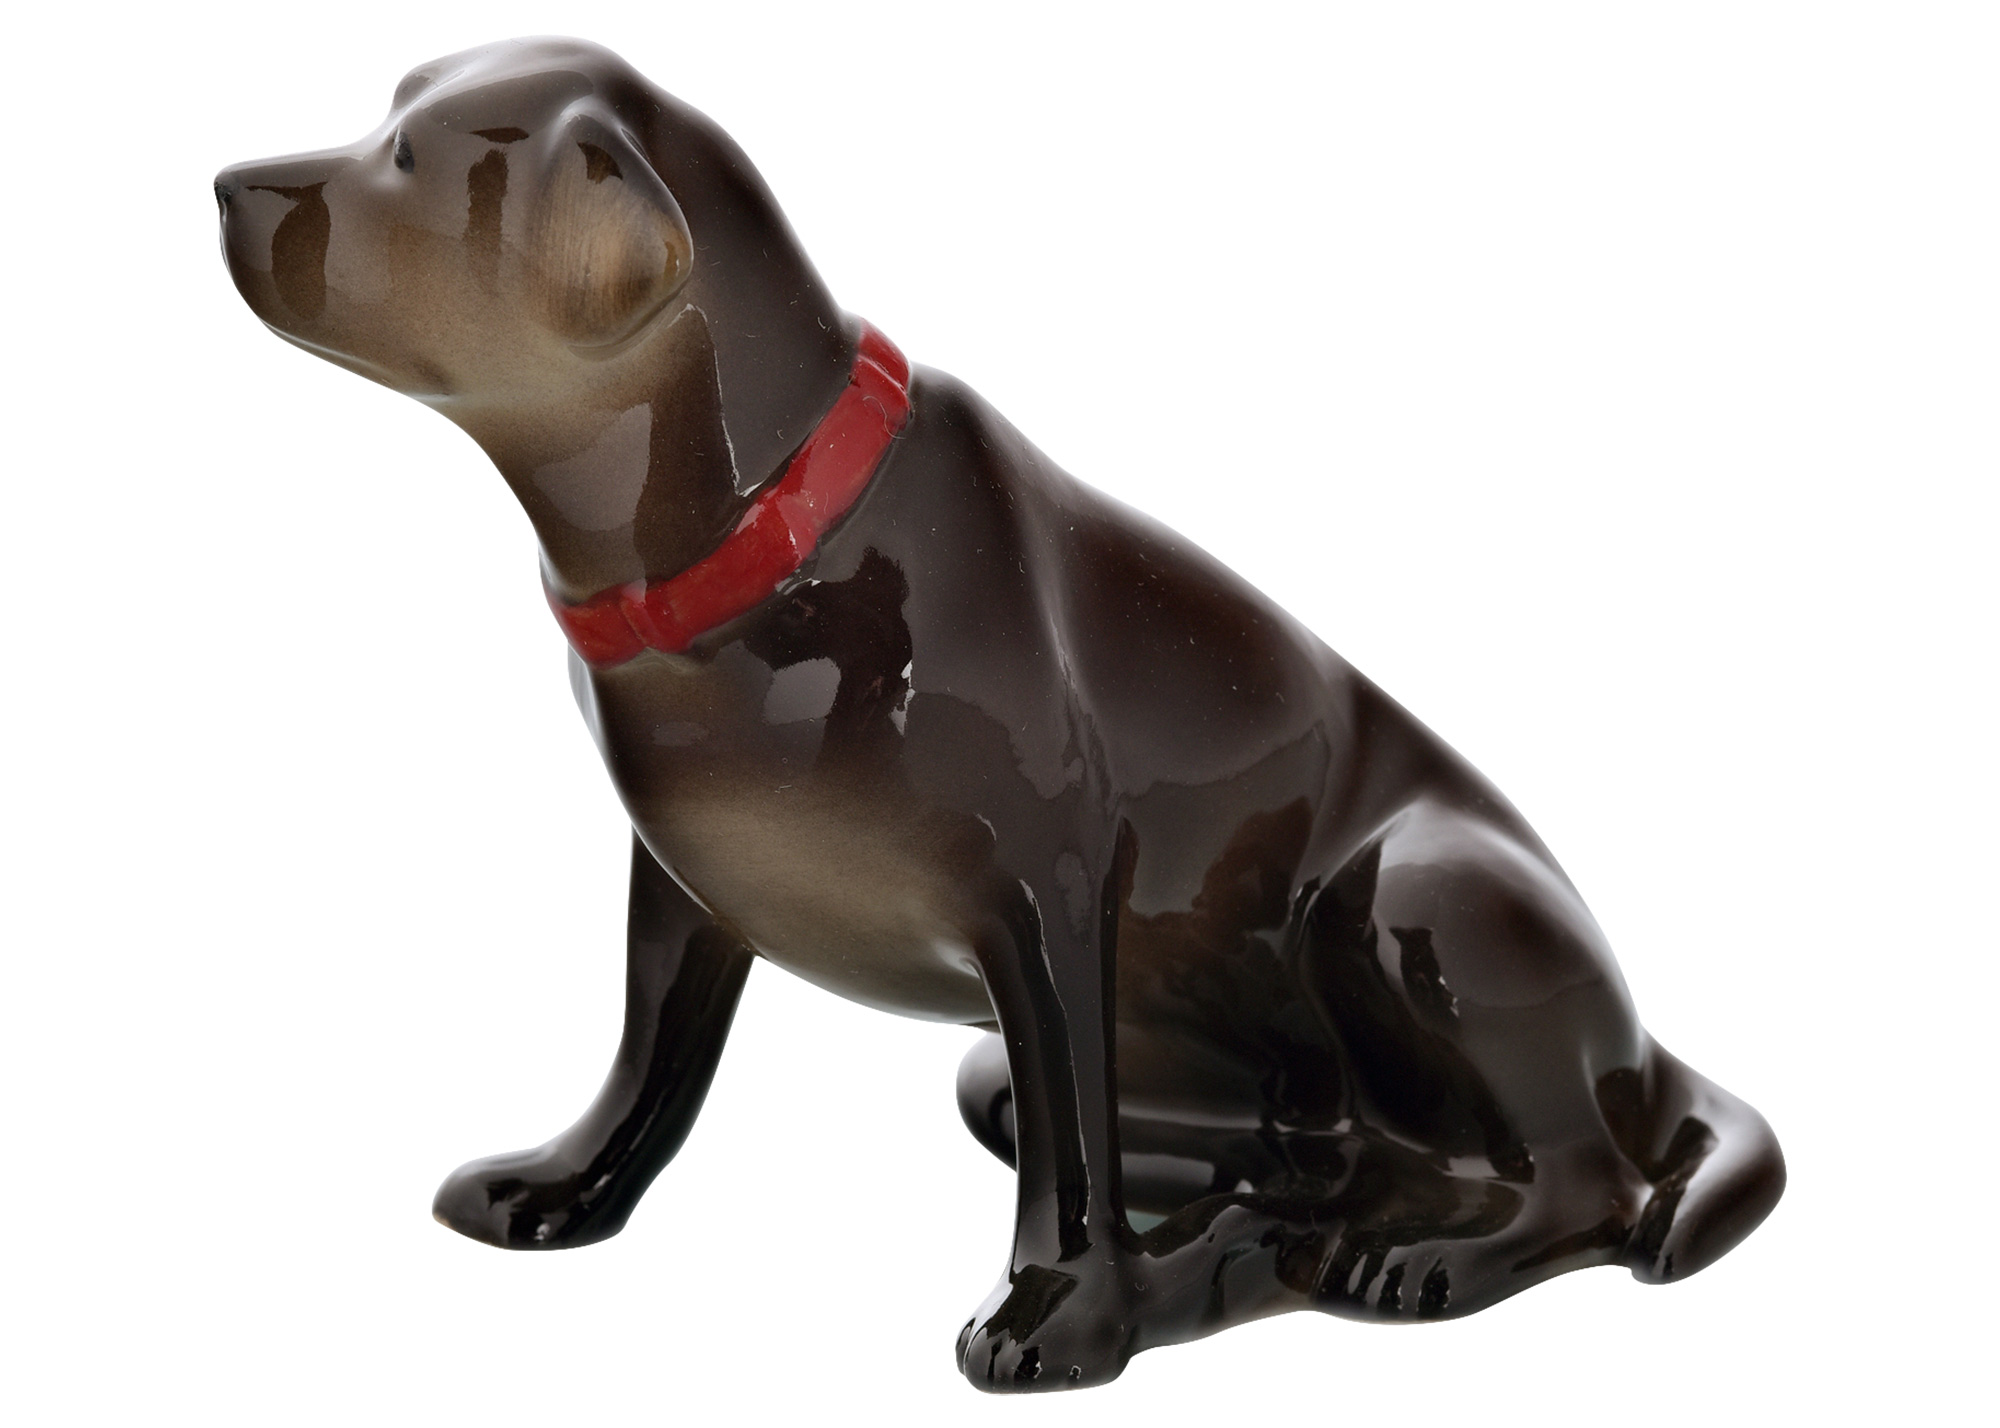 Buy Chocolate Labrador Retriever Porcleain Figurine 3.5" at GoldenCockerel.com